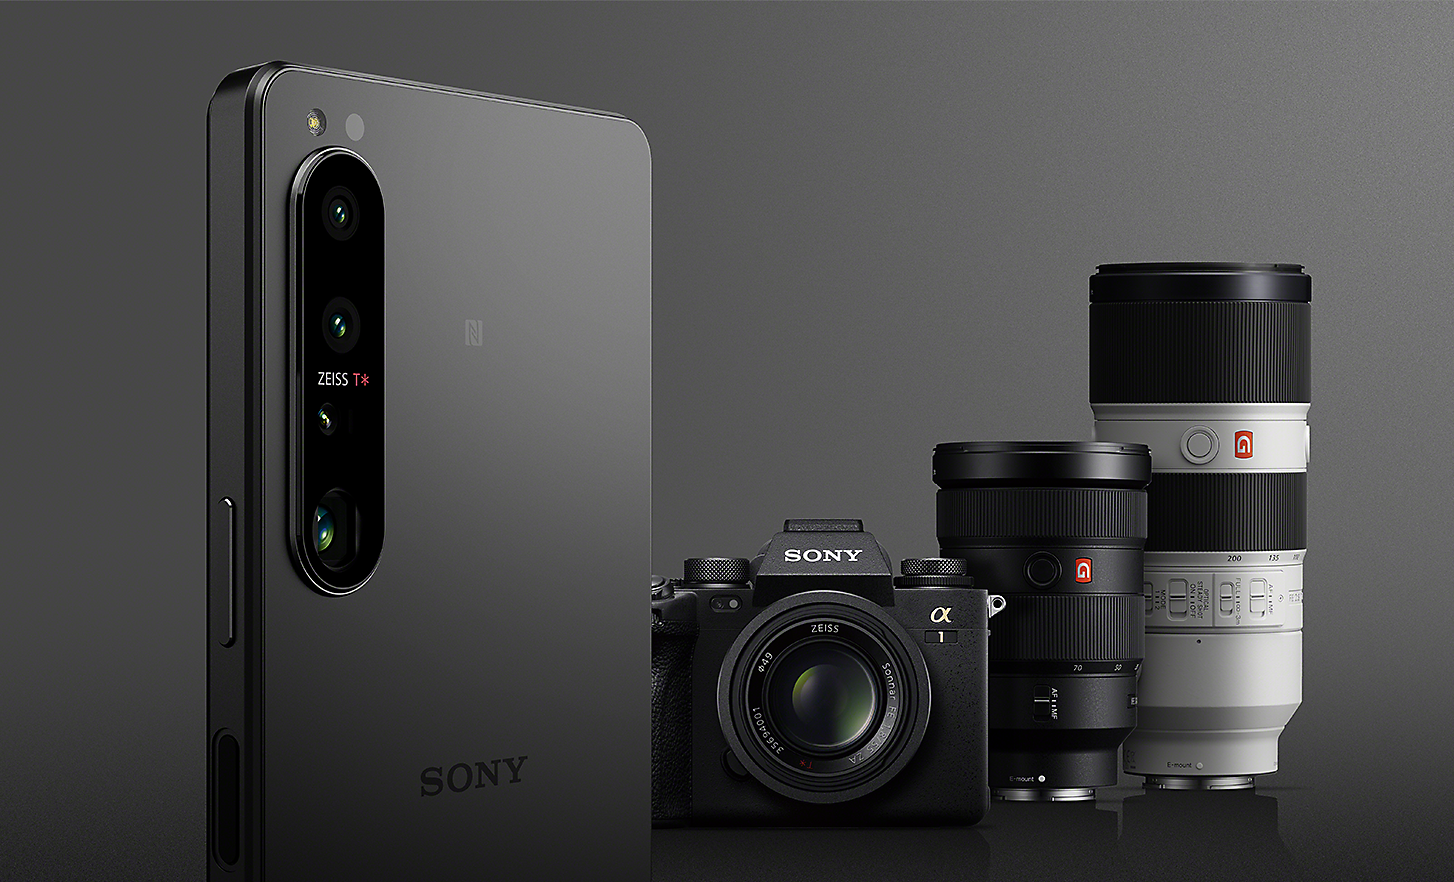 Smartphone Xperia 1 IV devant un appareil photo Sony Alpha et des objectifs en arrière-plan